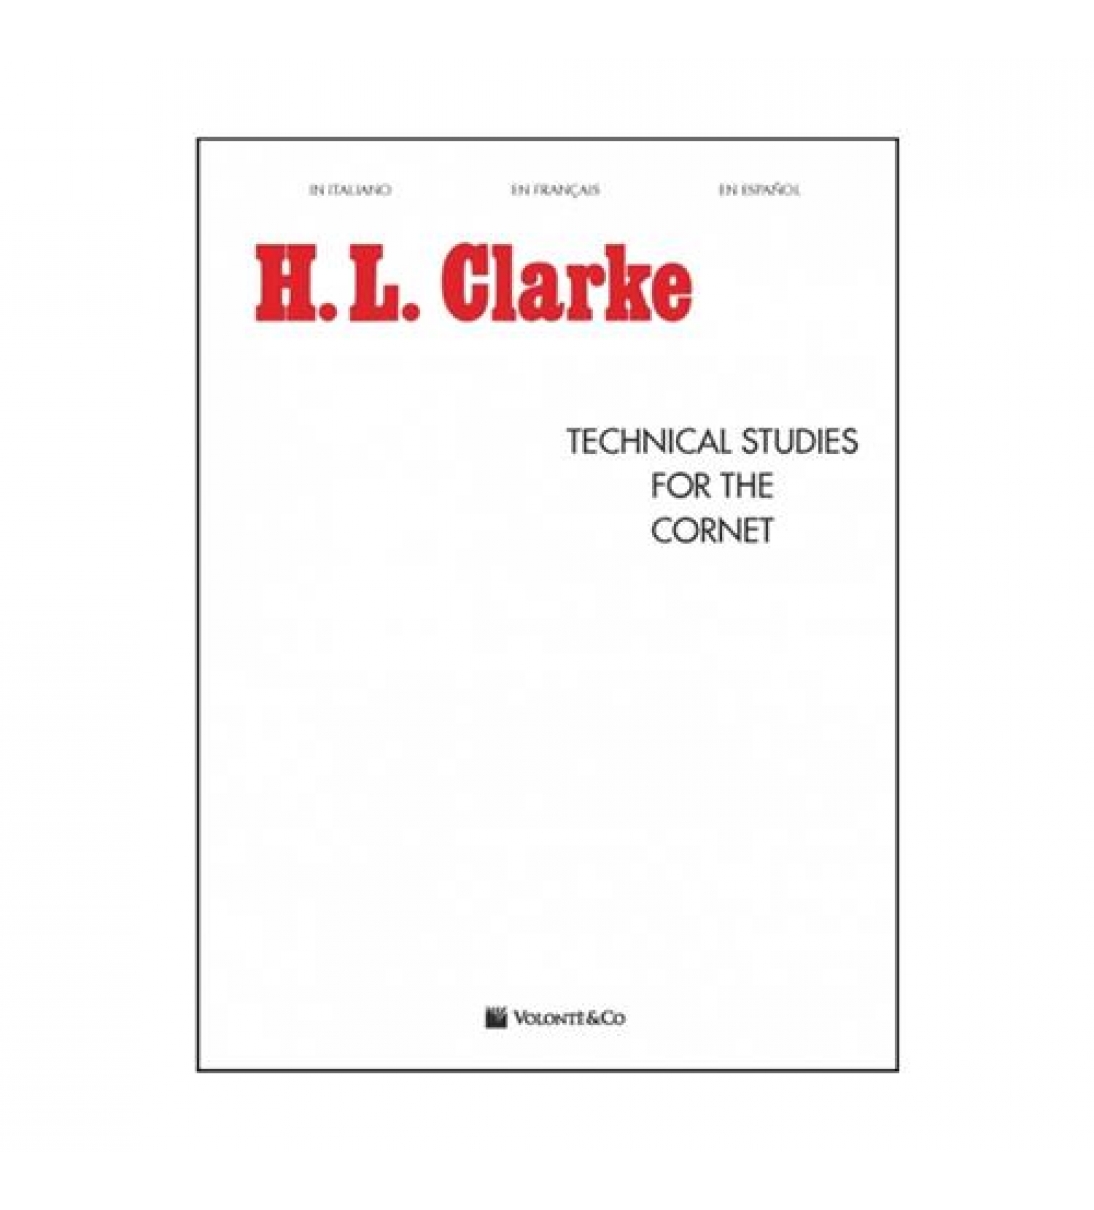  Technical studies for the cornet (Edizione italiana)